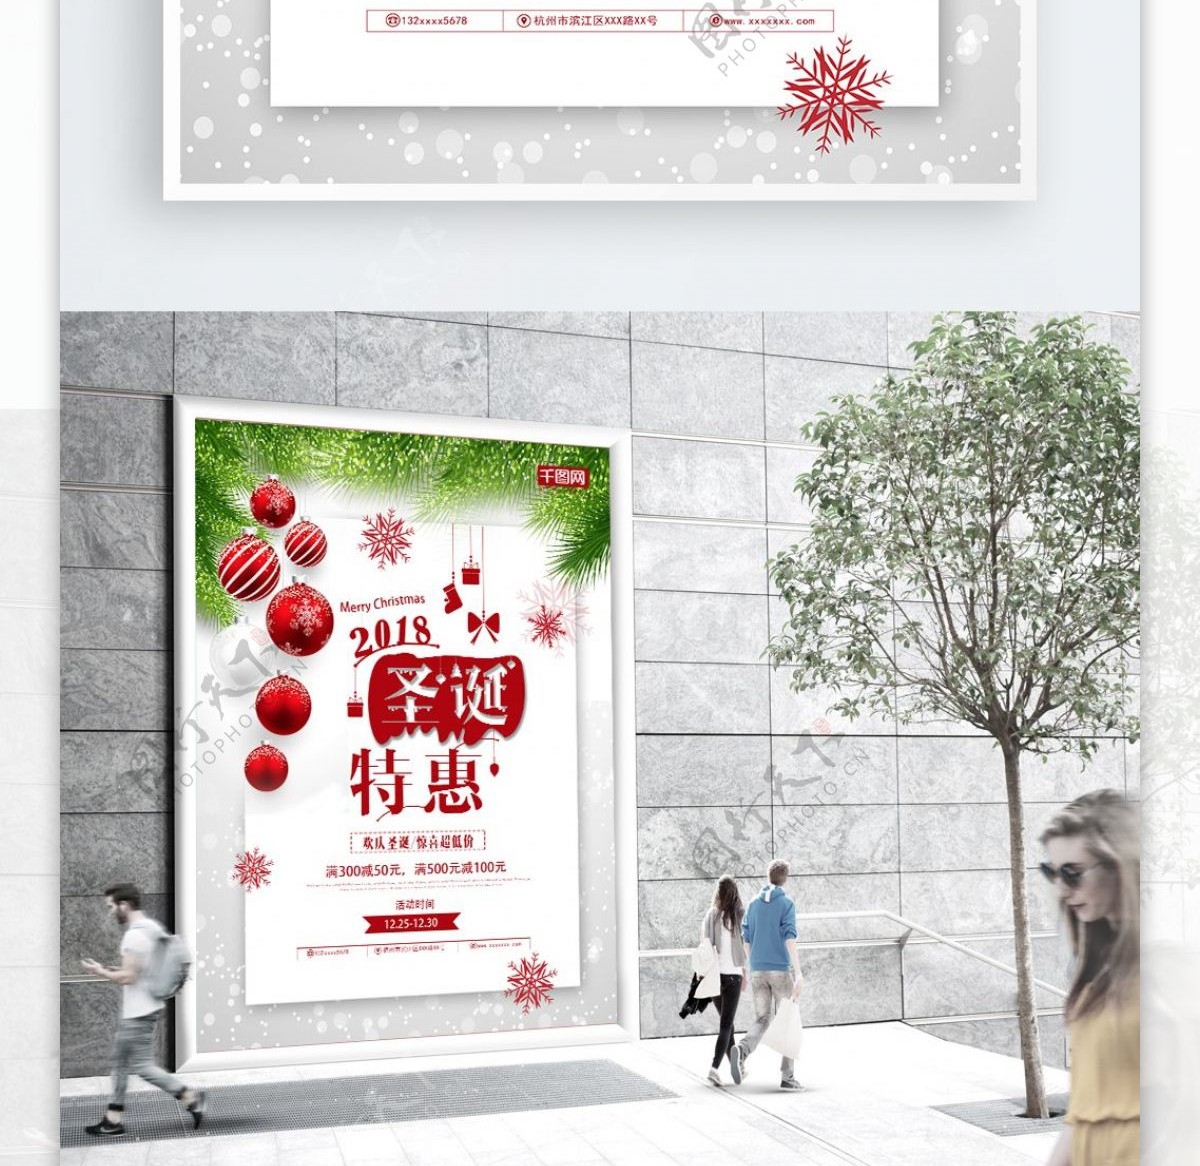 圣诞特惠节日促销打折海报